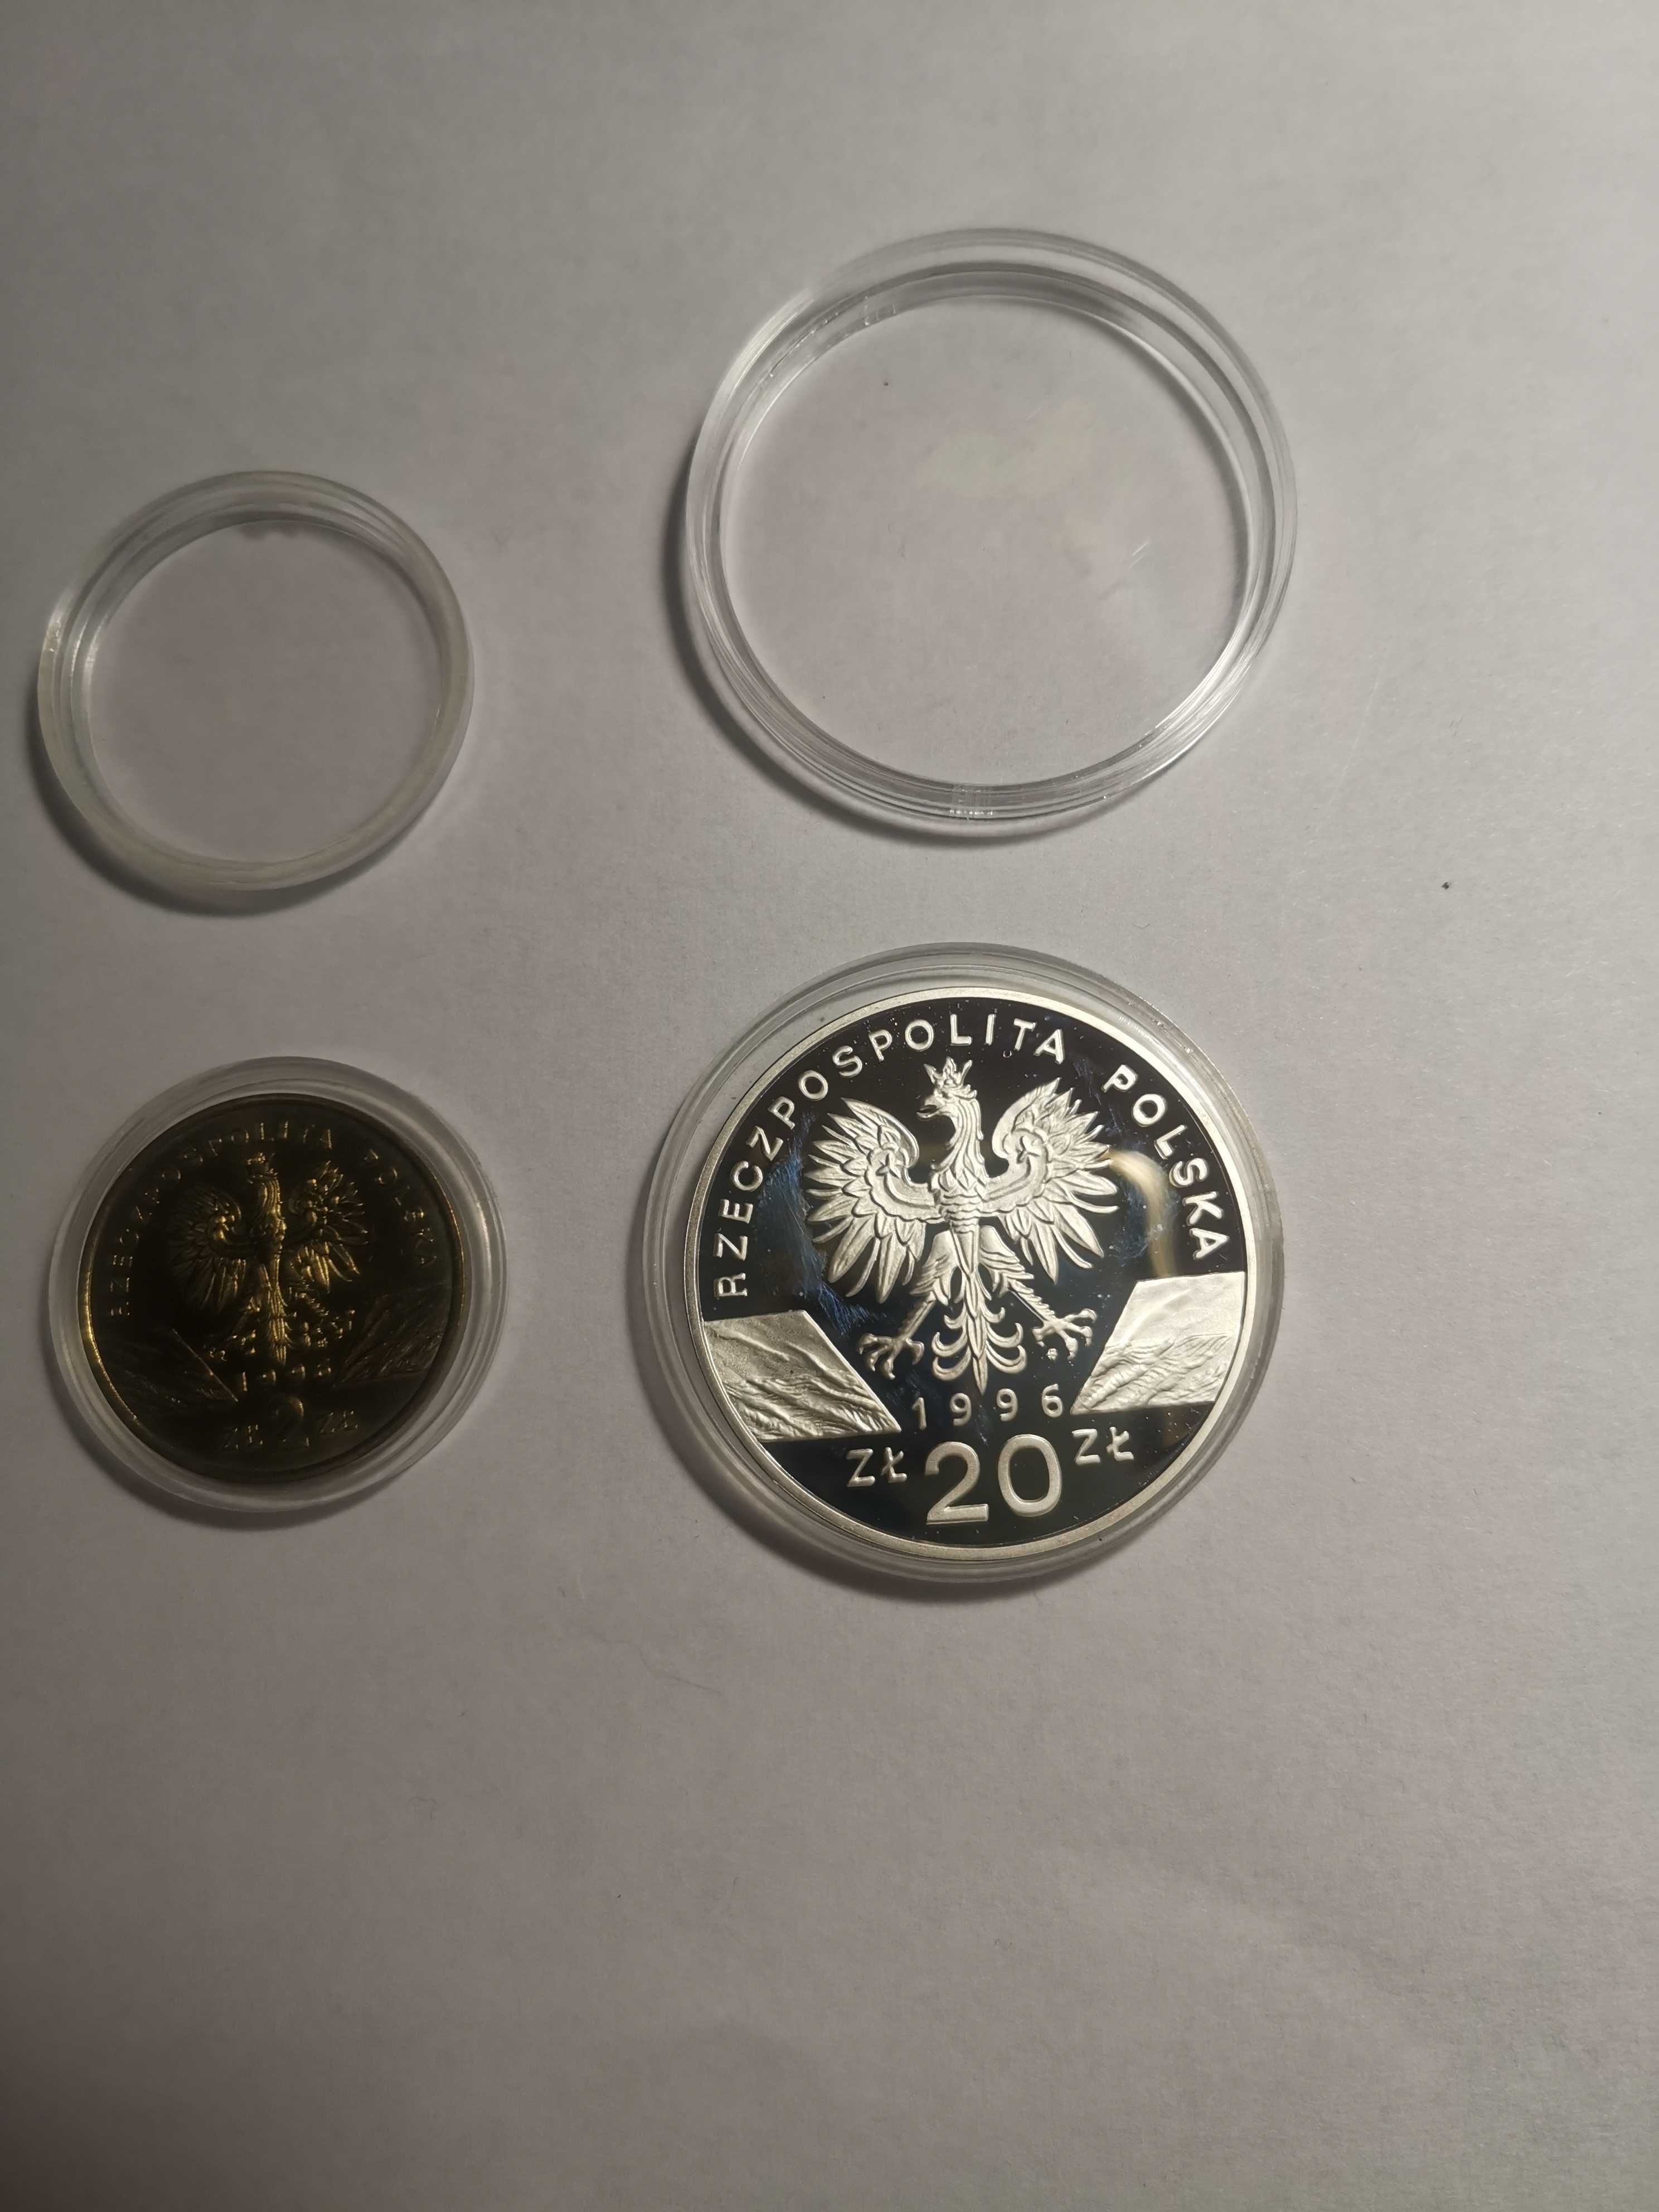 Srebrna moneta Jeż 20zł - 1996r. Oraz moneta Jeż 2zł - 1996